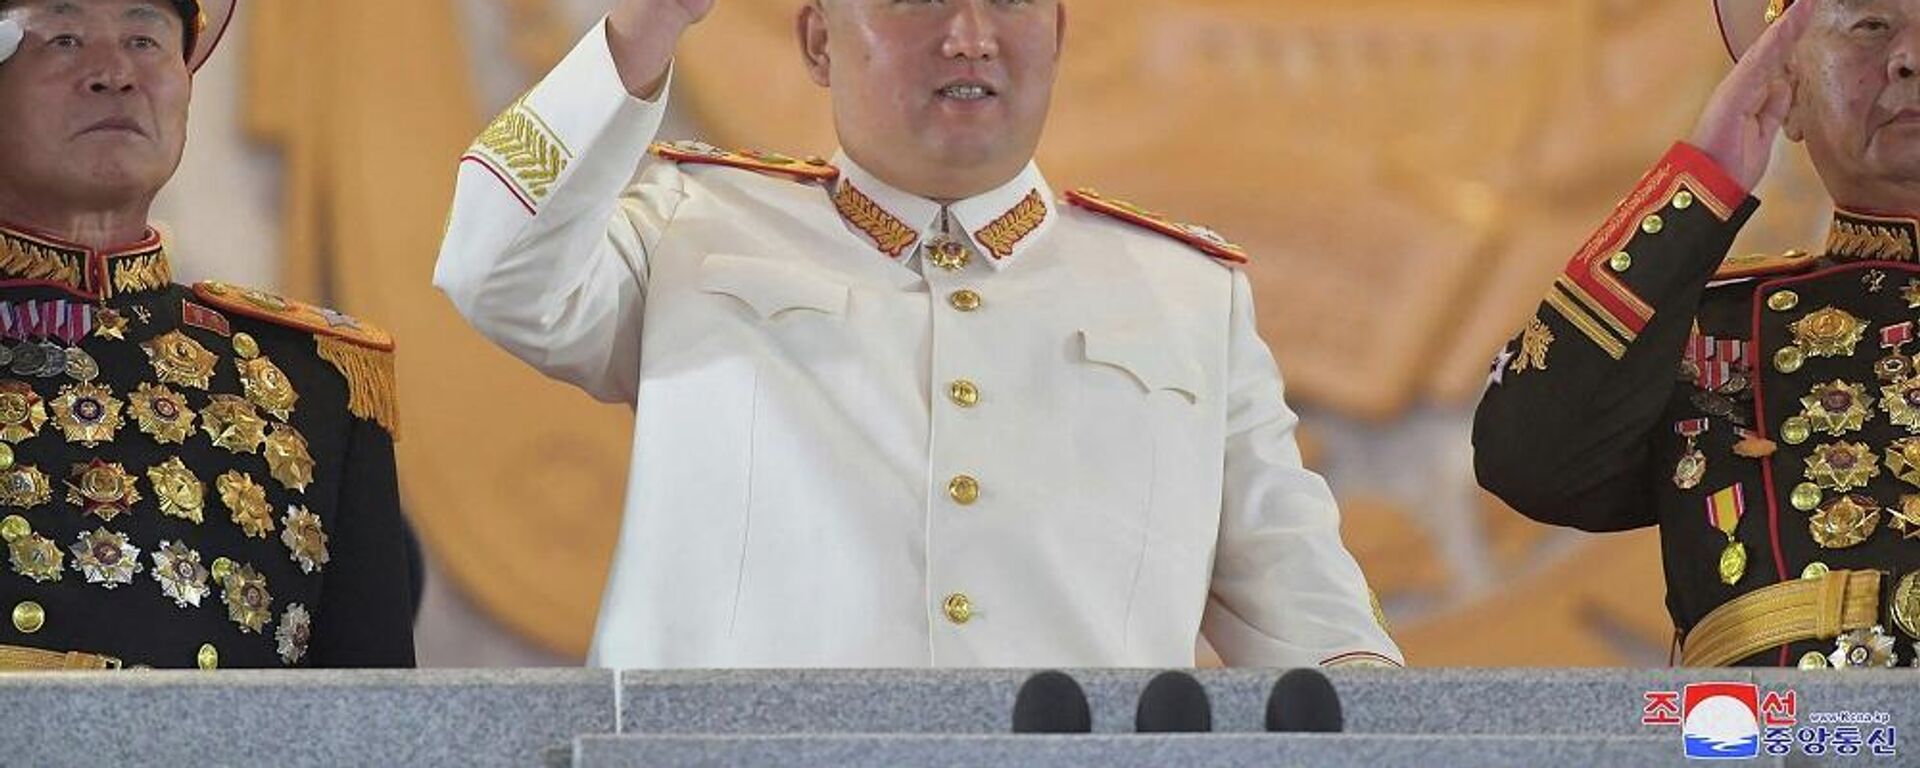 زعيم كوريا الشمالية، كيم جونغ أون، يشارك في عرض عسكري كبير أقيم في ساحة كيم إيل سونغ في بيونغ يانغ، 26 نيسان/ أبريل 2022 - سبوتنيك عربي, 1920, 31.08.2023